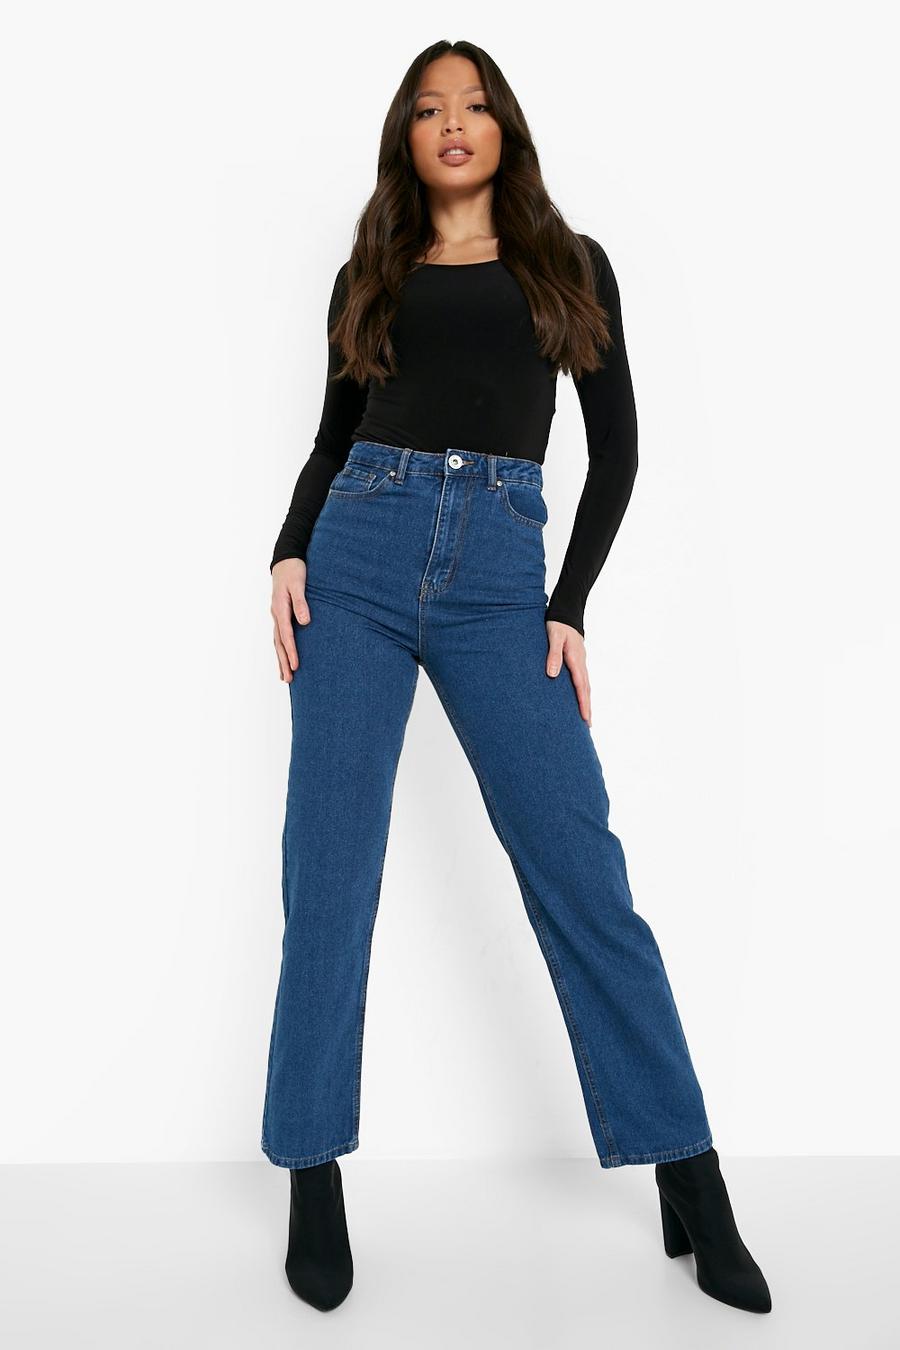 כחול ביניים ג'ינס גזרת בויפרנד לנשים גבוהות image number 1